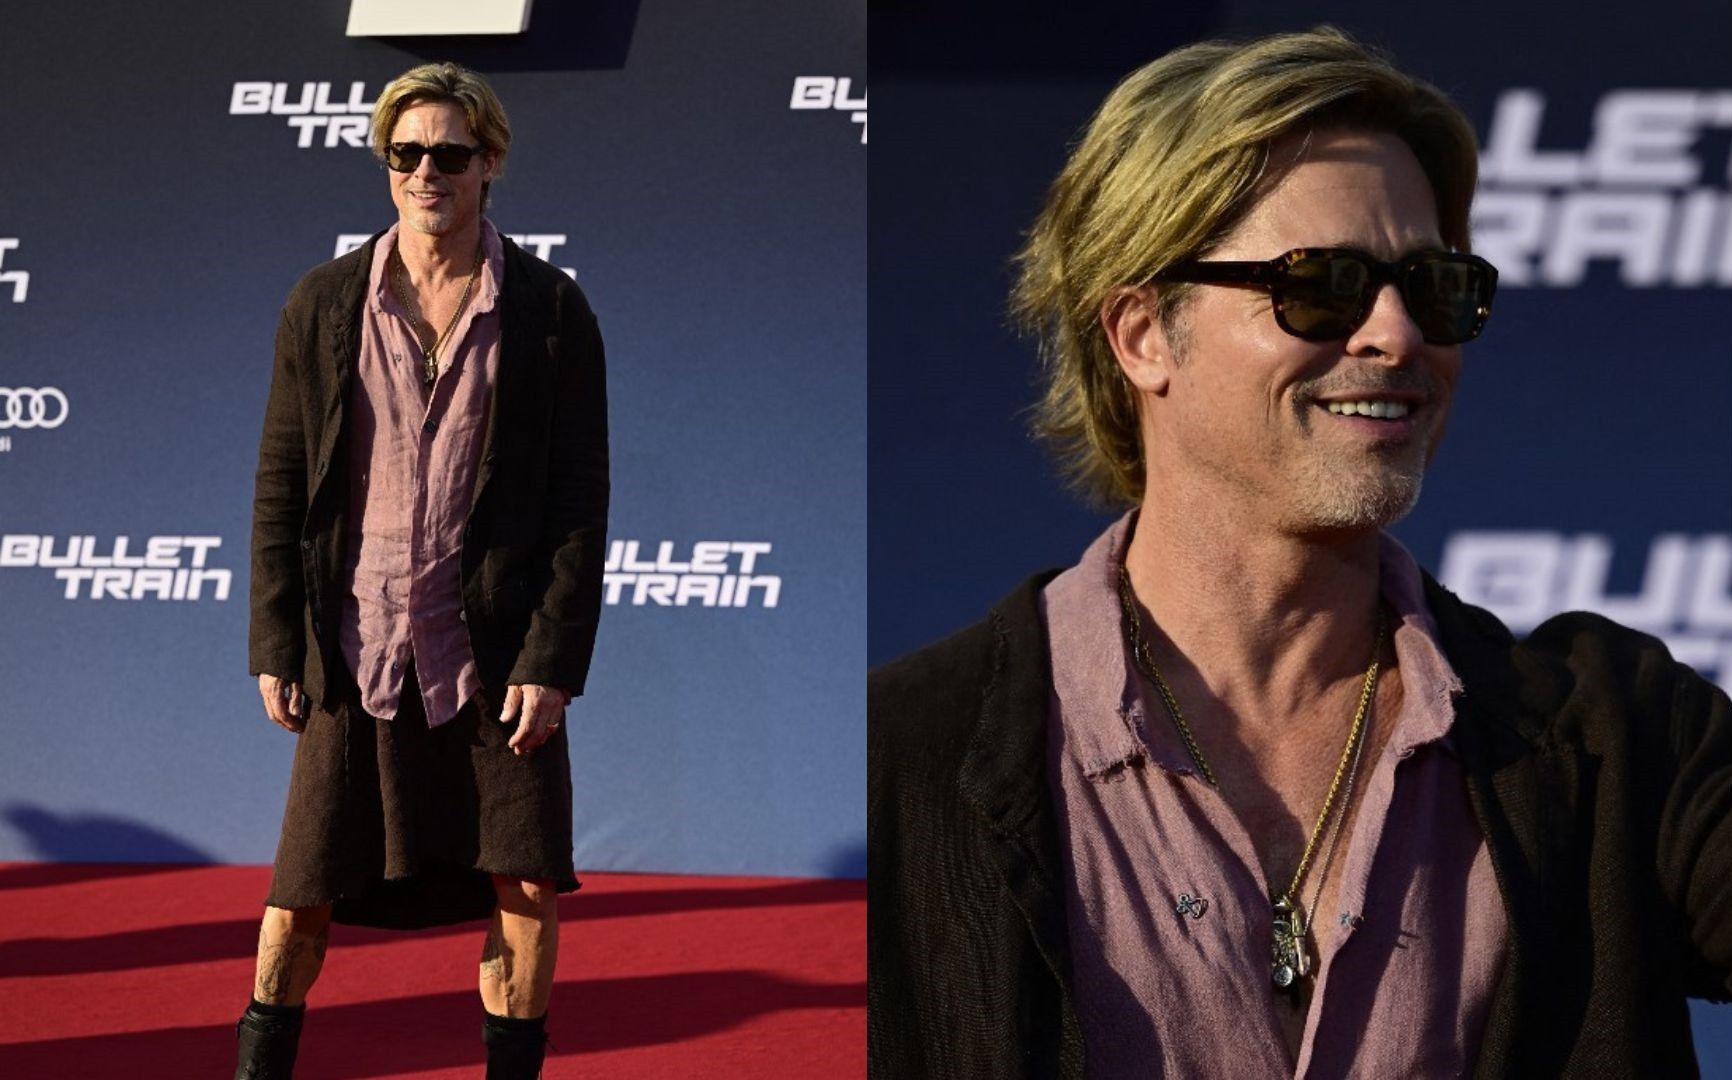 Brad Pitt clarifies his retirement rumors at Bullet Train premiere